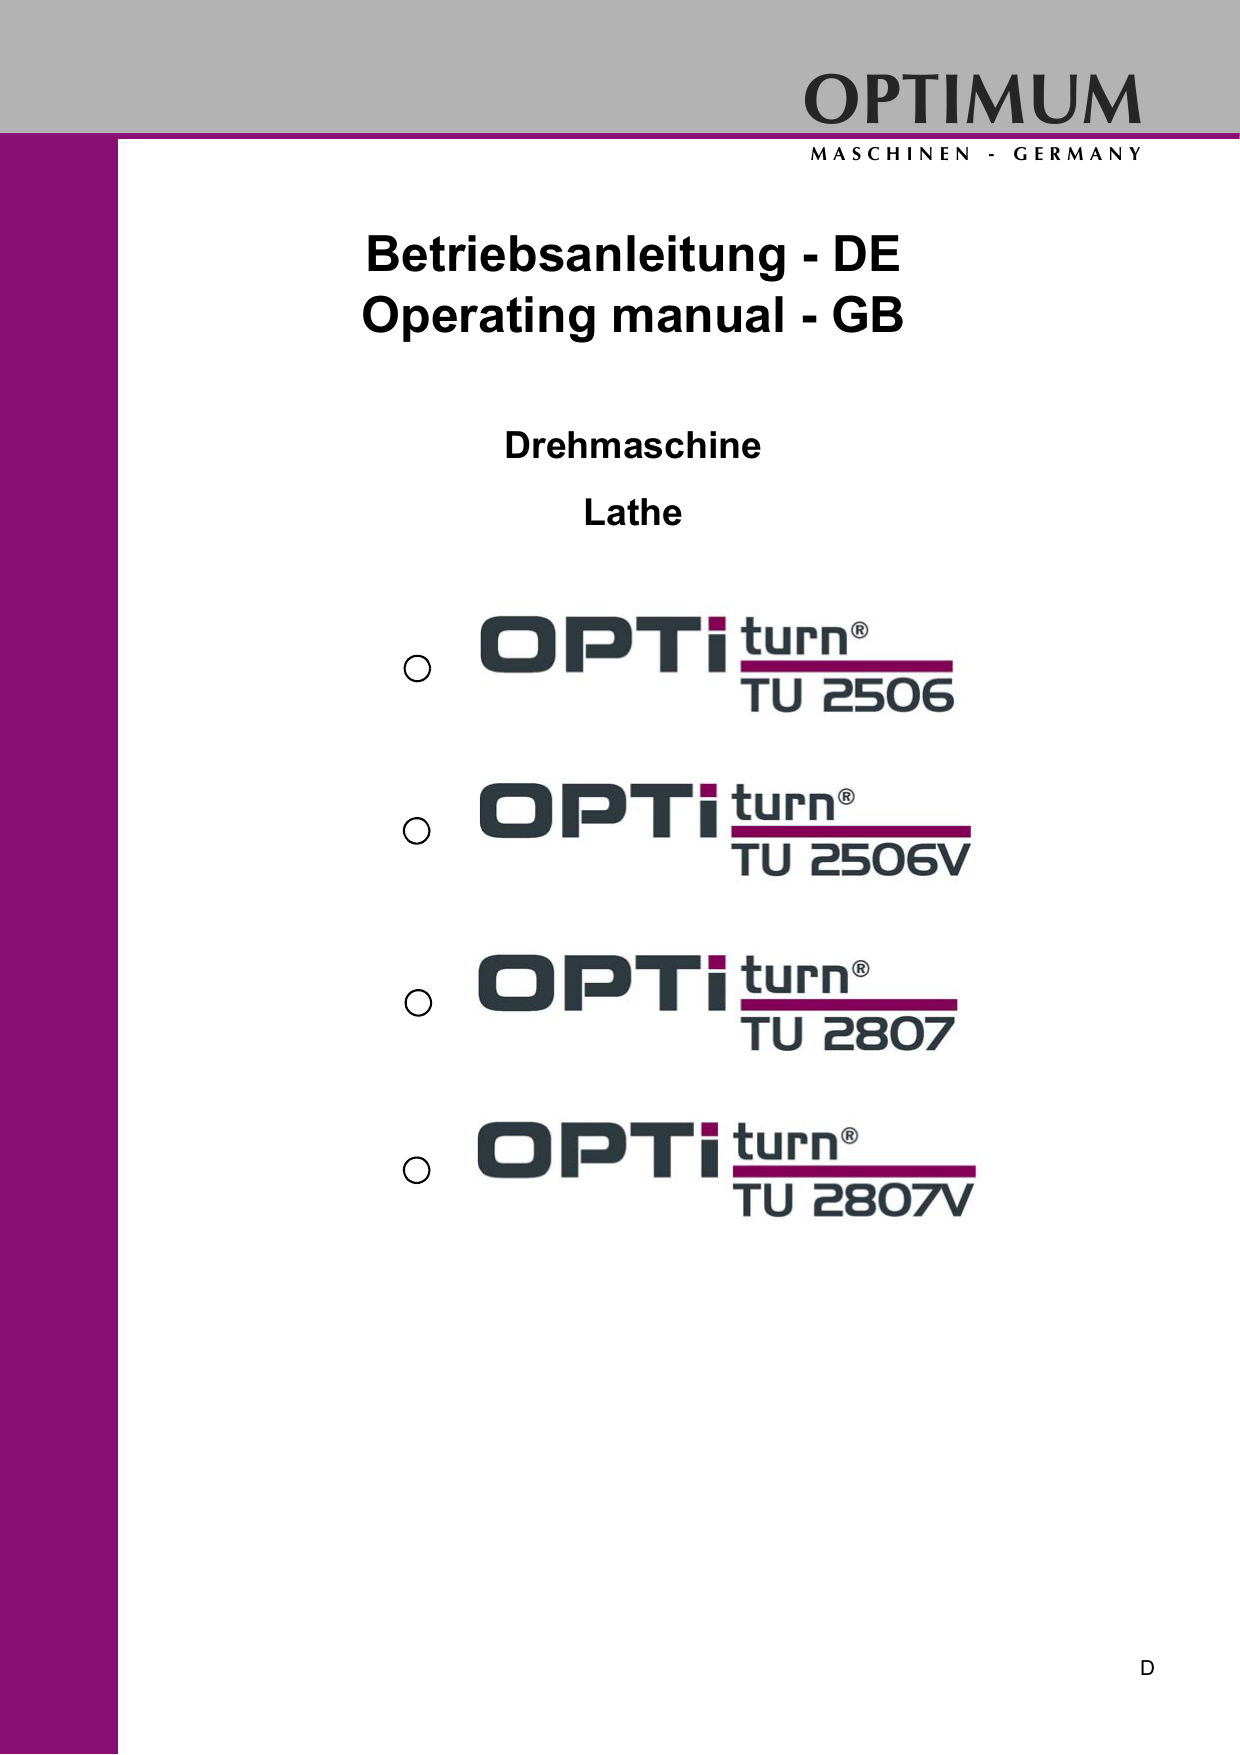 Optimum Optiturn TU 2807 Operating Manual